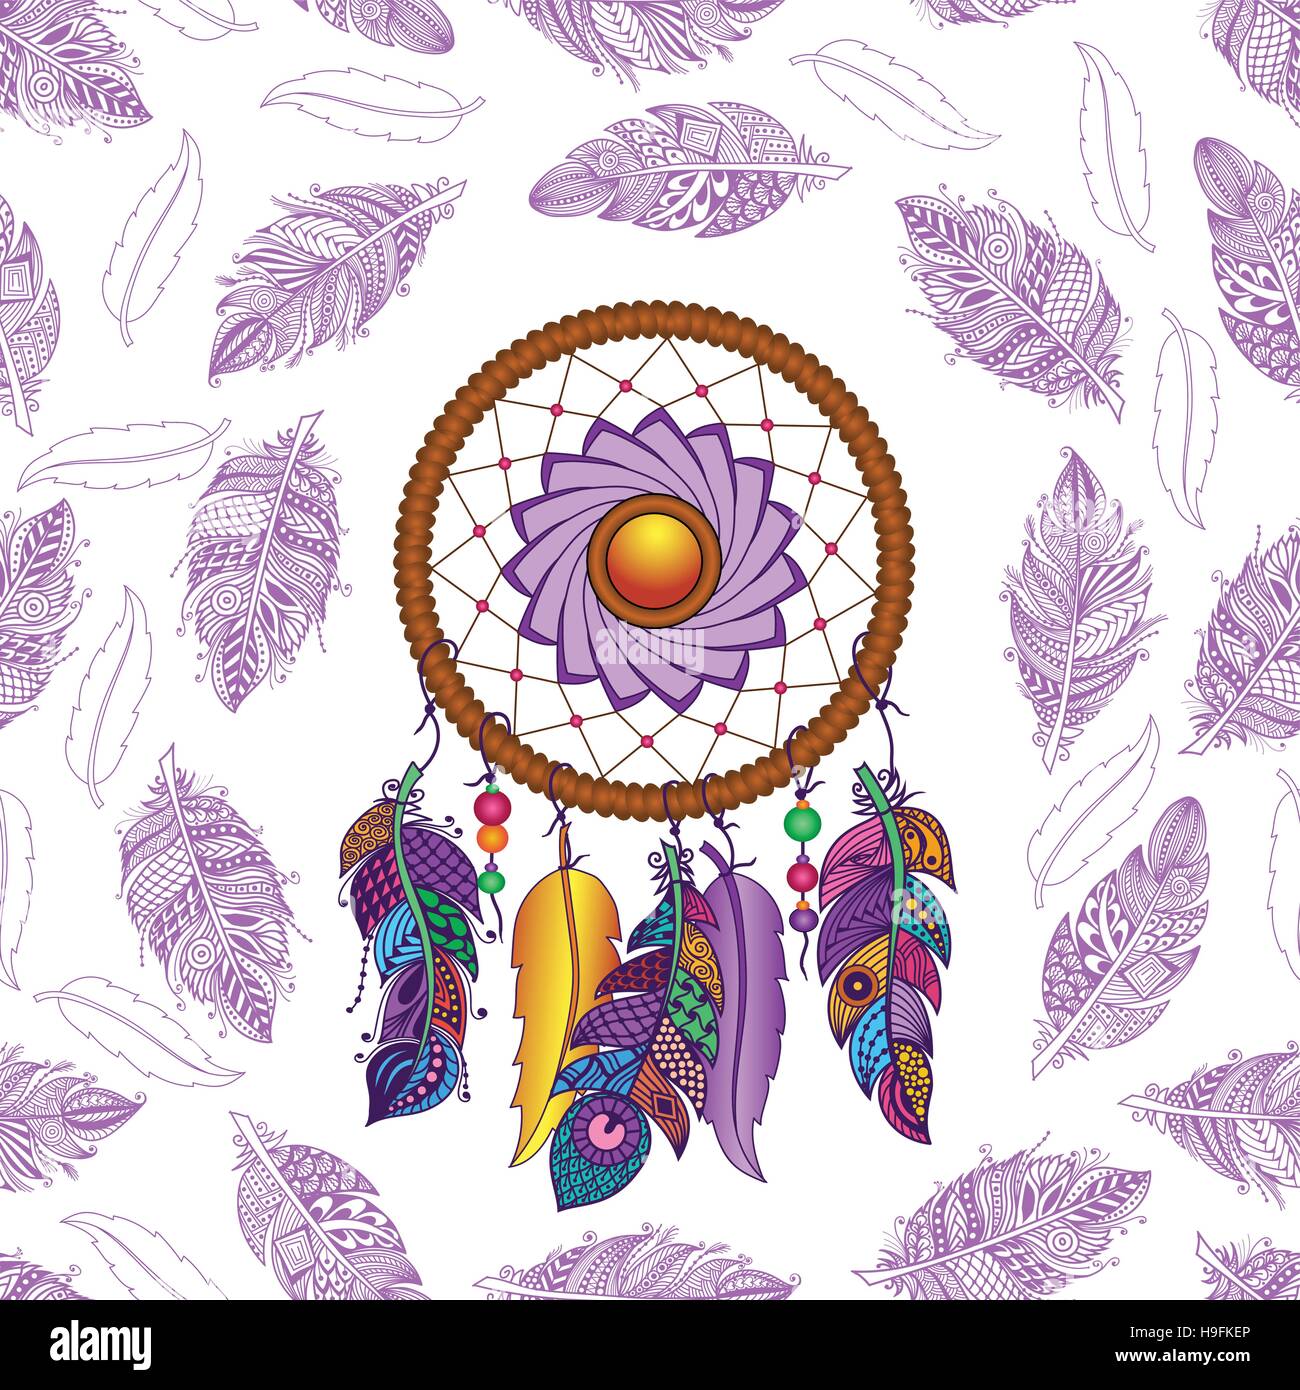 Handgezeichnete Native American Indian Talisman farbige Dreamcatcher mit Federn und Mond. Vektor Hipster Musterdesign. Isoliert auf weißem Hintergrund. Stock Vektor